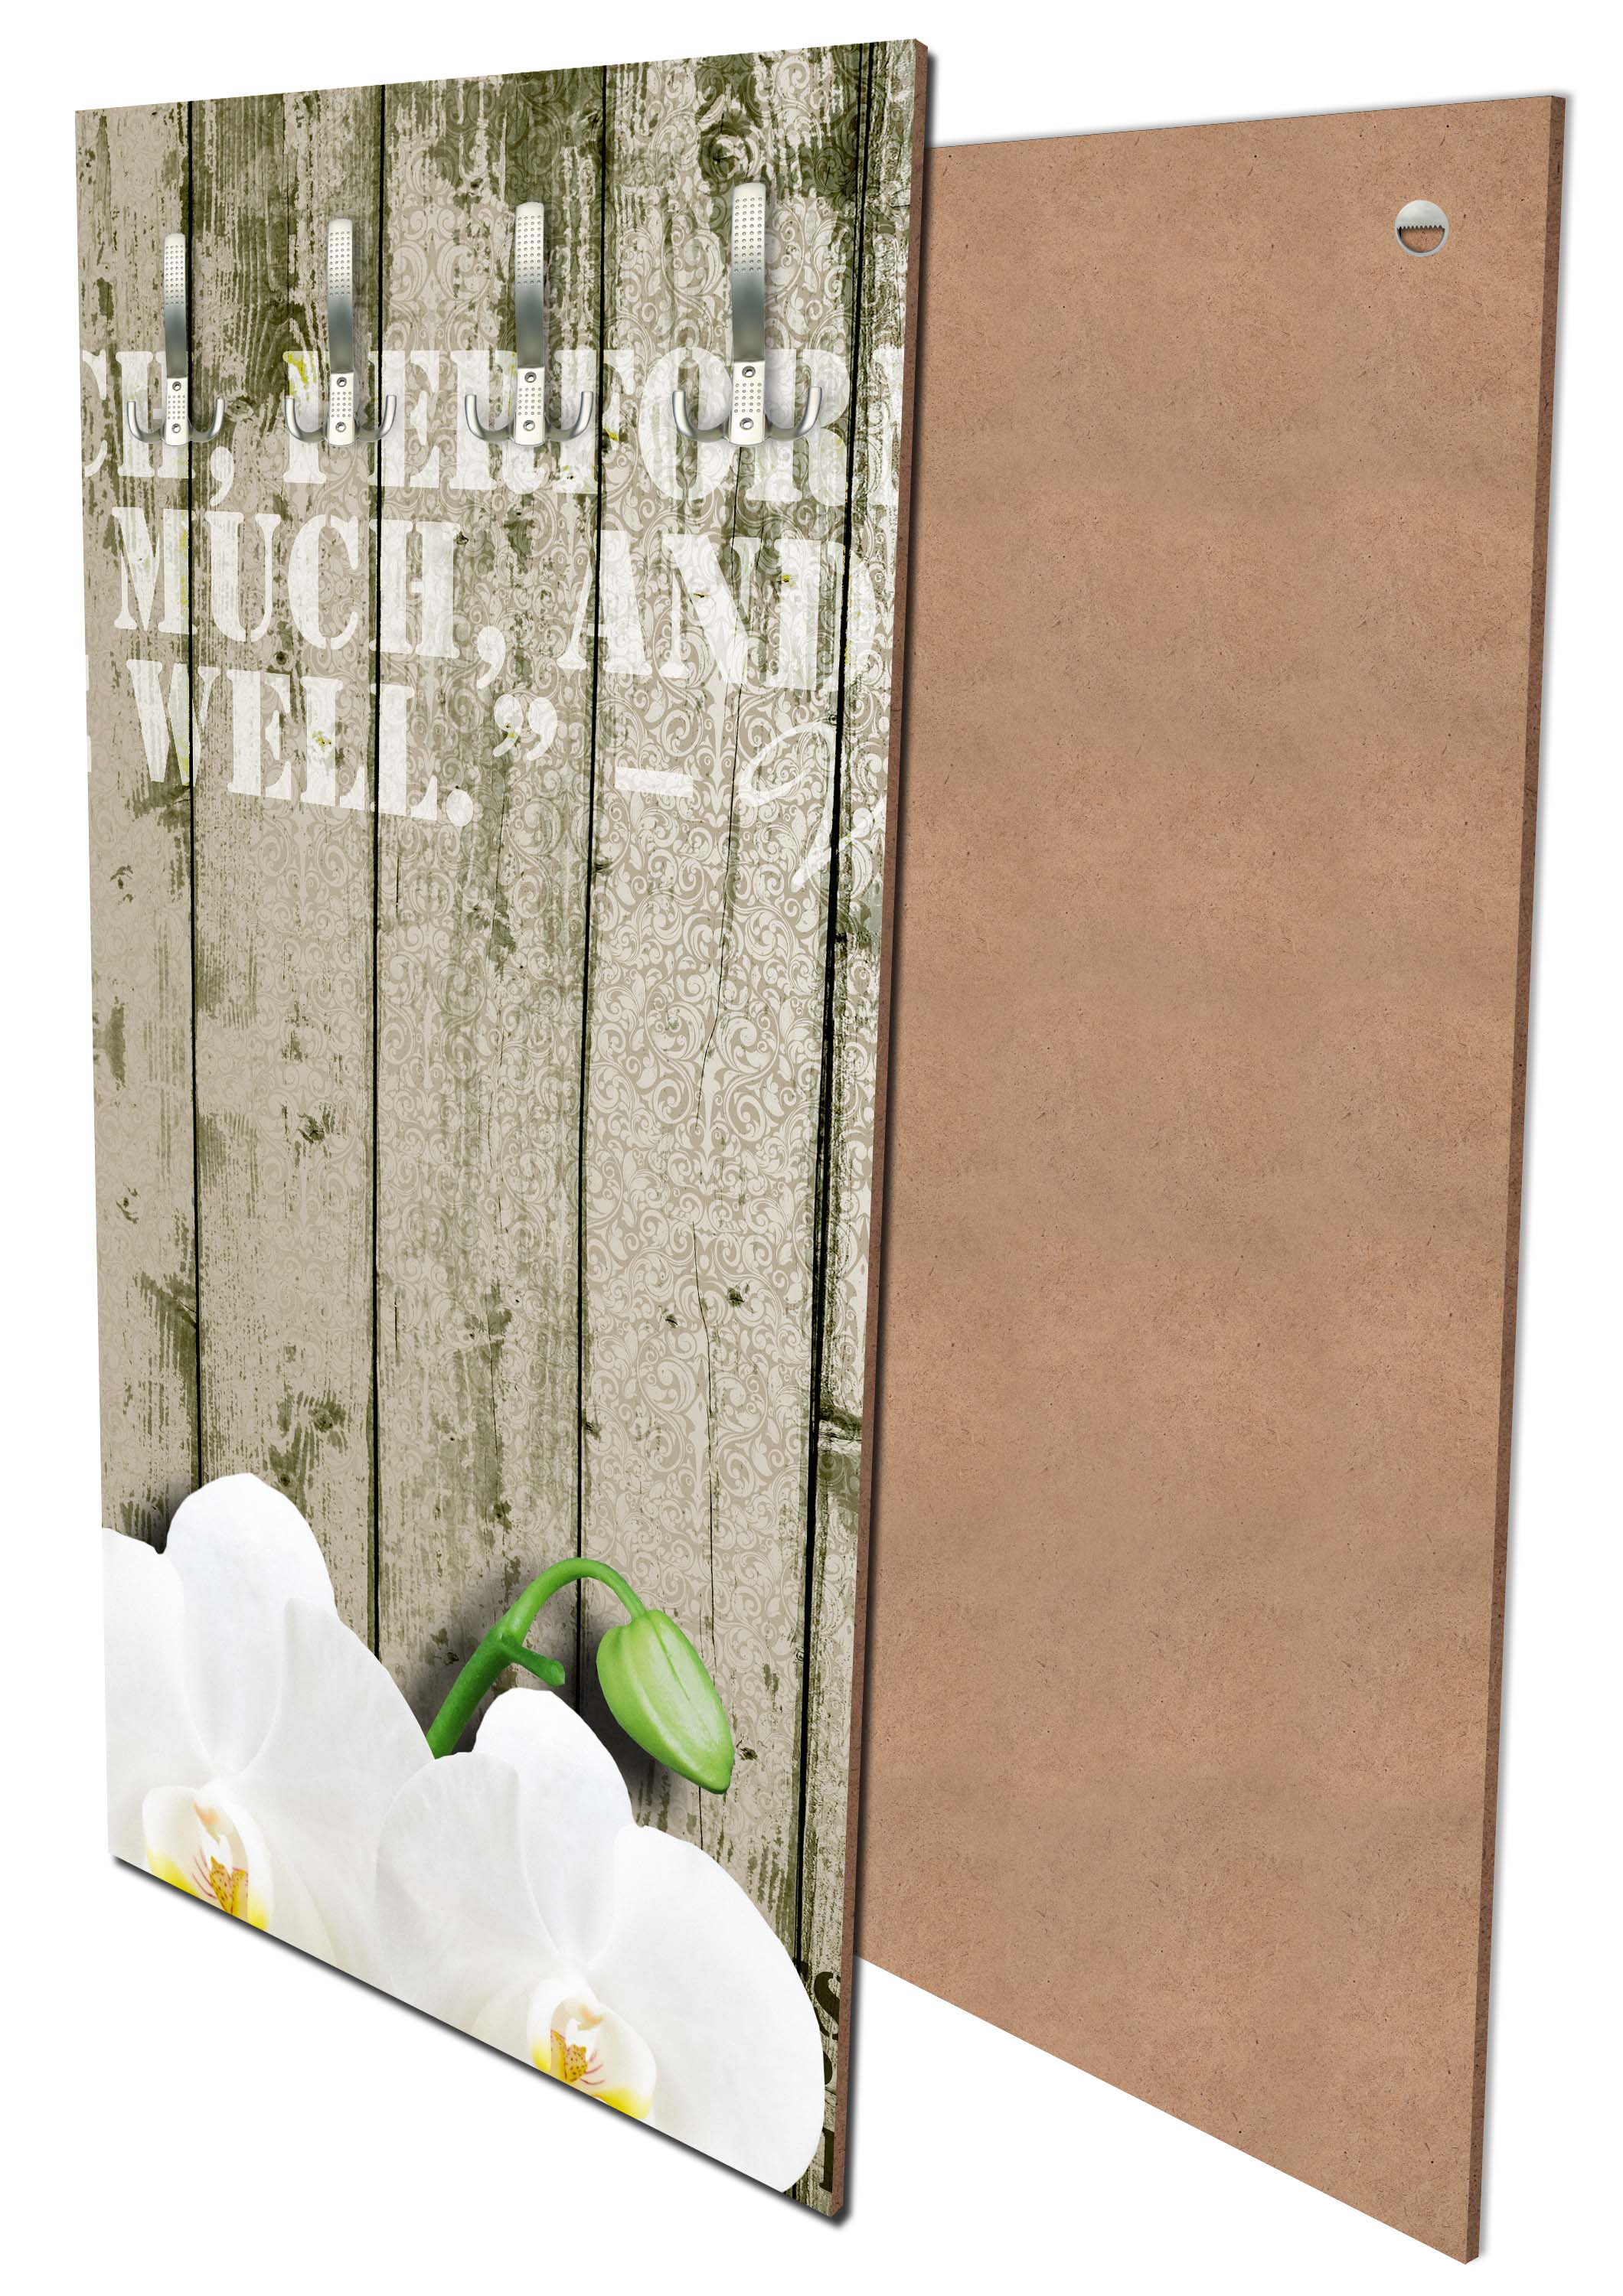 Garderobe Holz Zaun weiße Orchidee M0539 entdecken - Bild 1